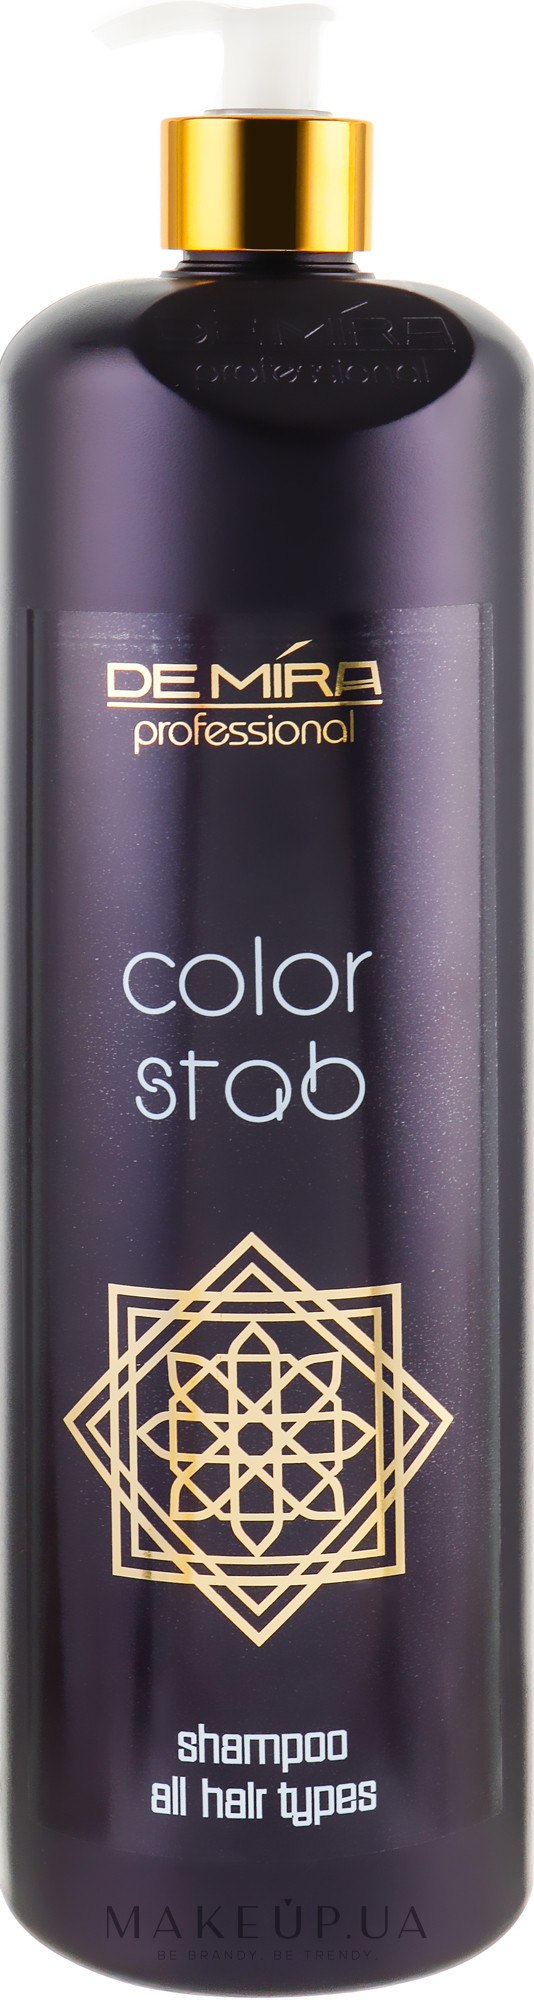 Професійний шампунь-стабілізатор для фарбованого волосся - DeMira Professional Color Stab Shampoo — фото 1000ml